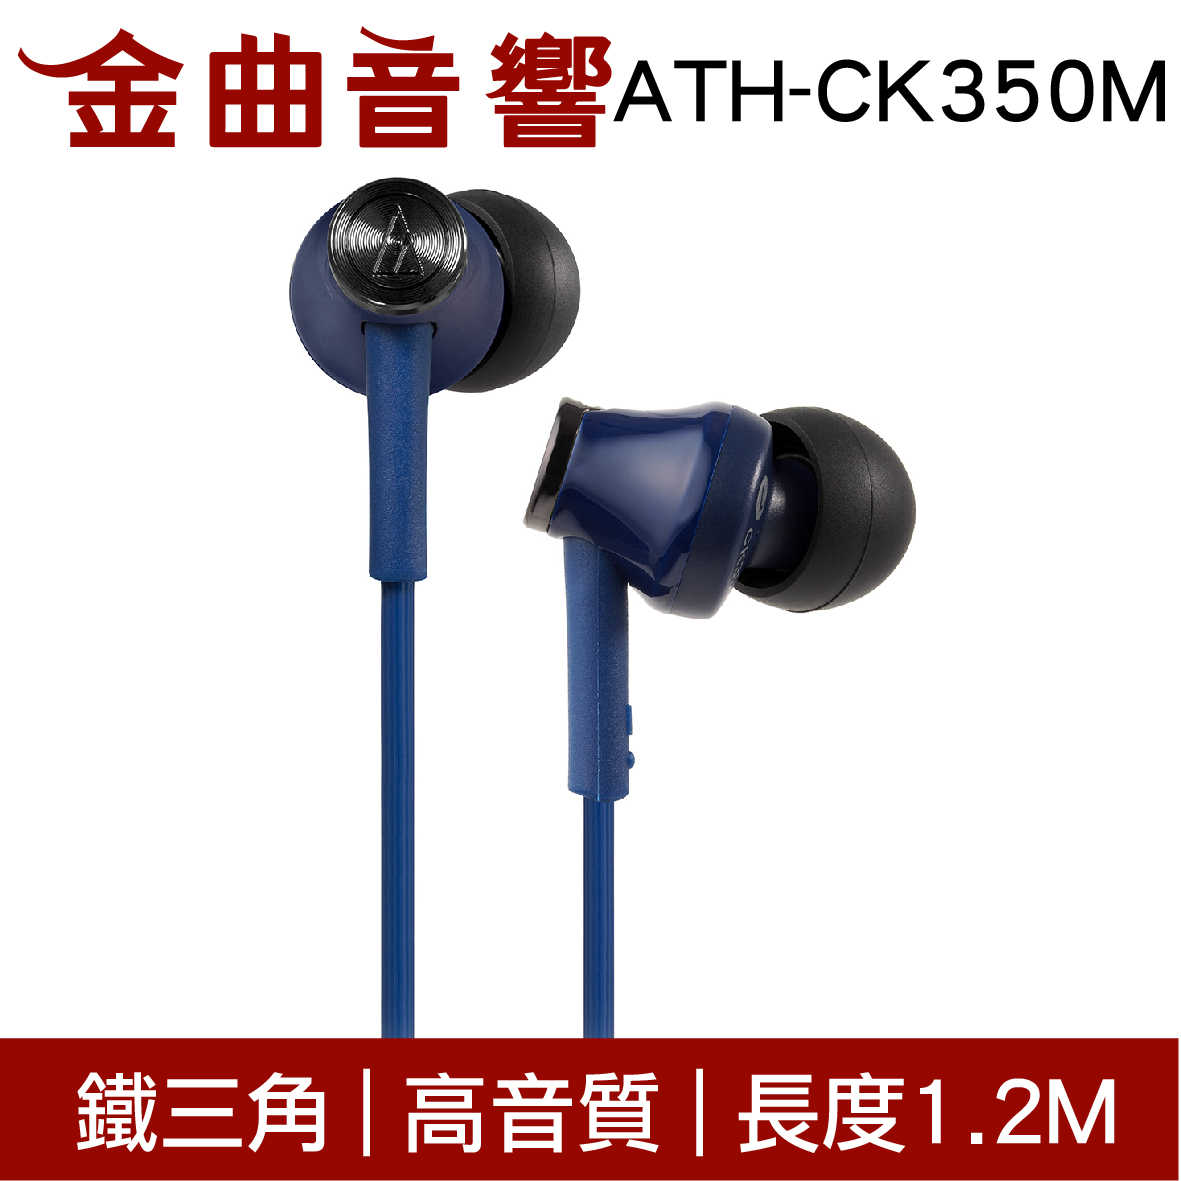 鐵三角 ATH-CK350M 多色可選 高音質 耳道式 耳機 | 金曲音響